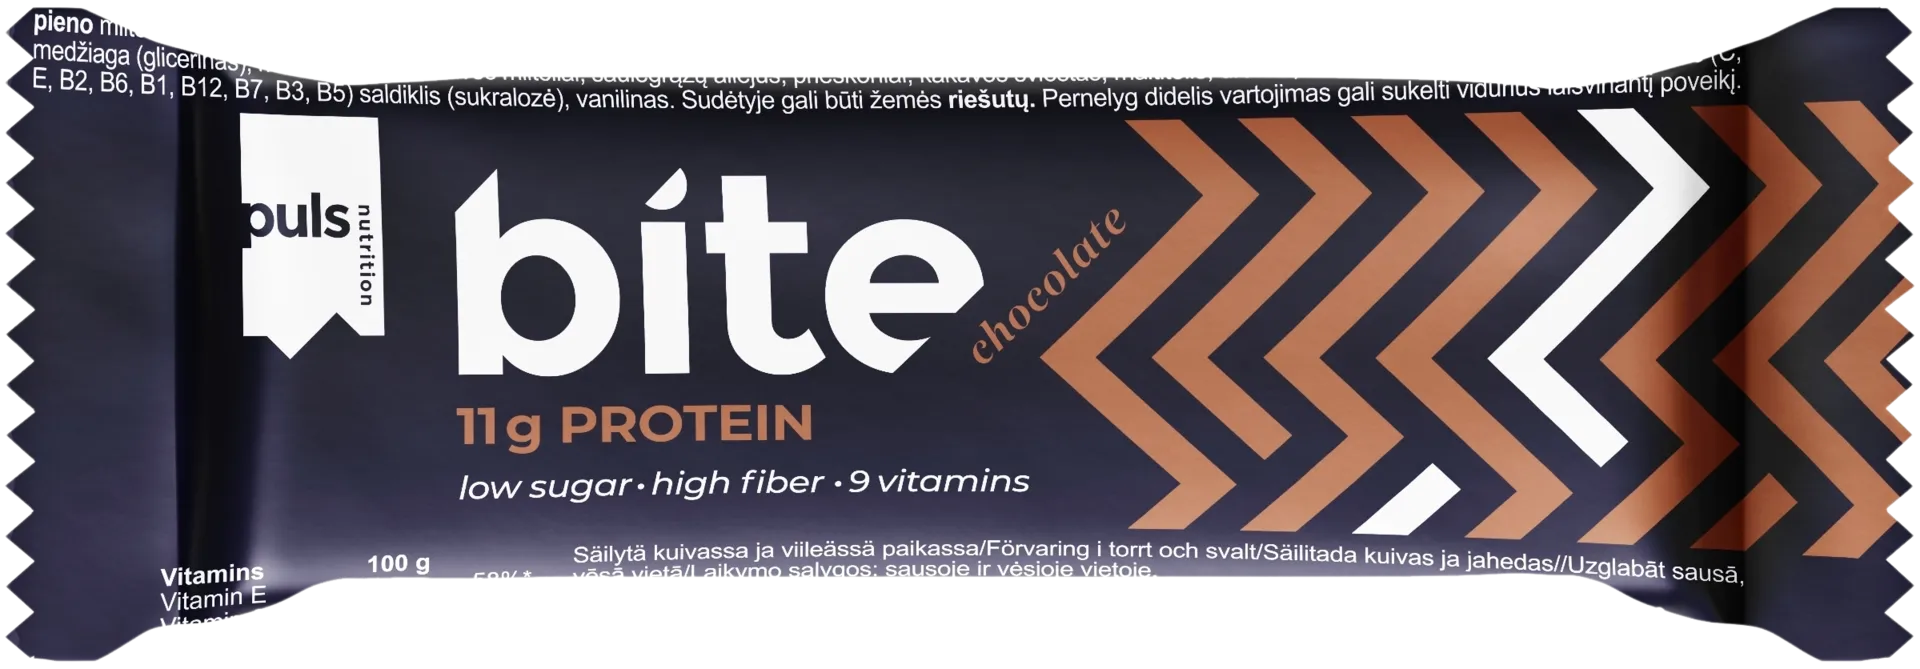 PULS Bite 35g suklaa vahäsokerinen proteiinipatukka